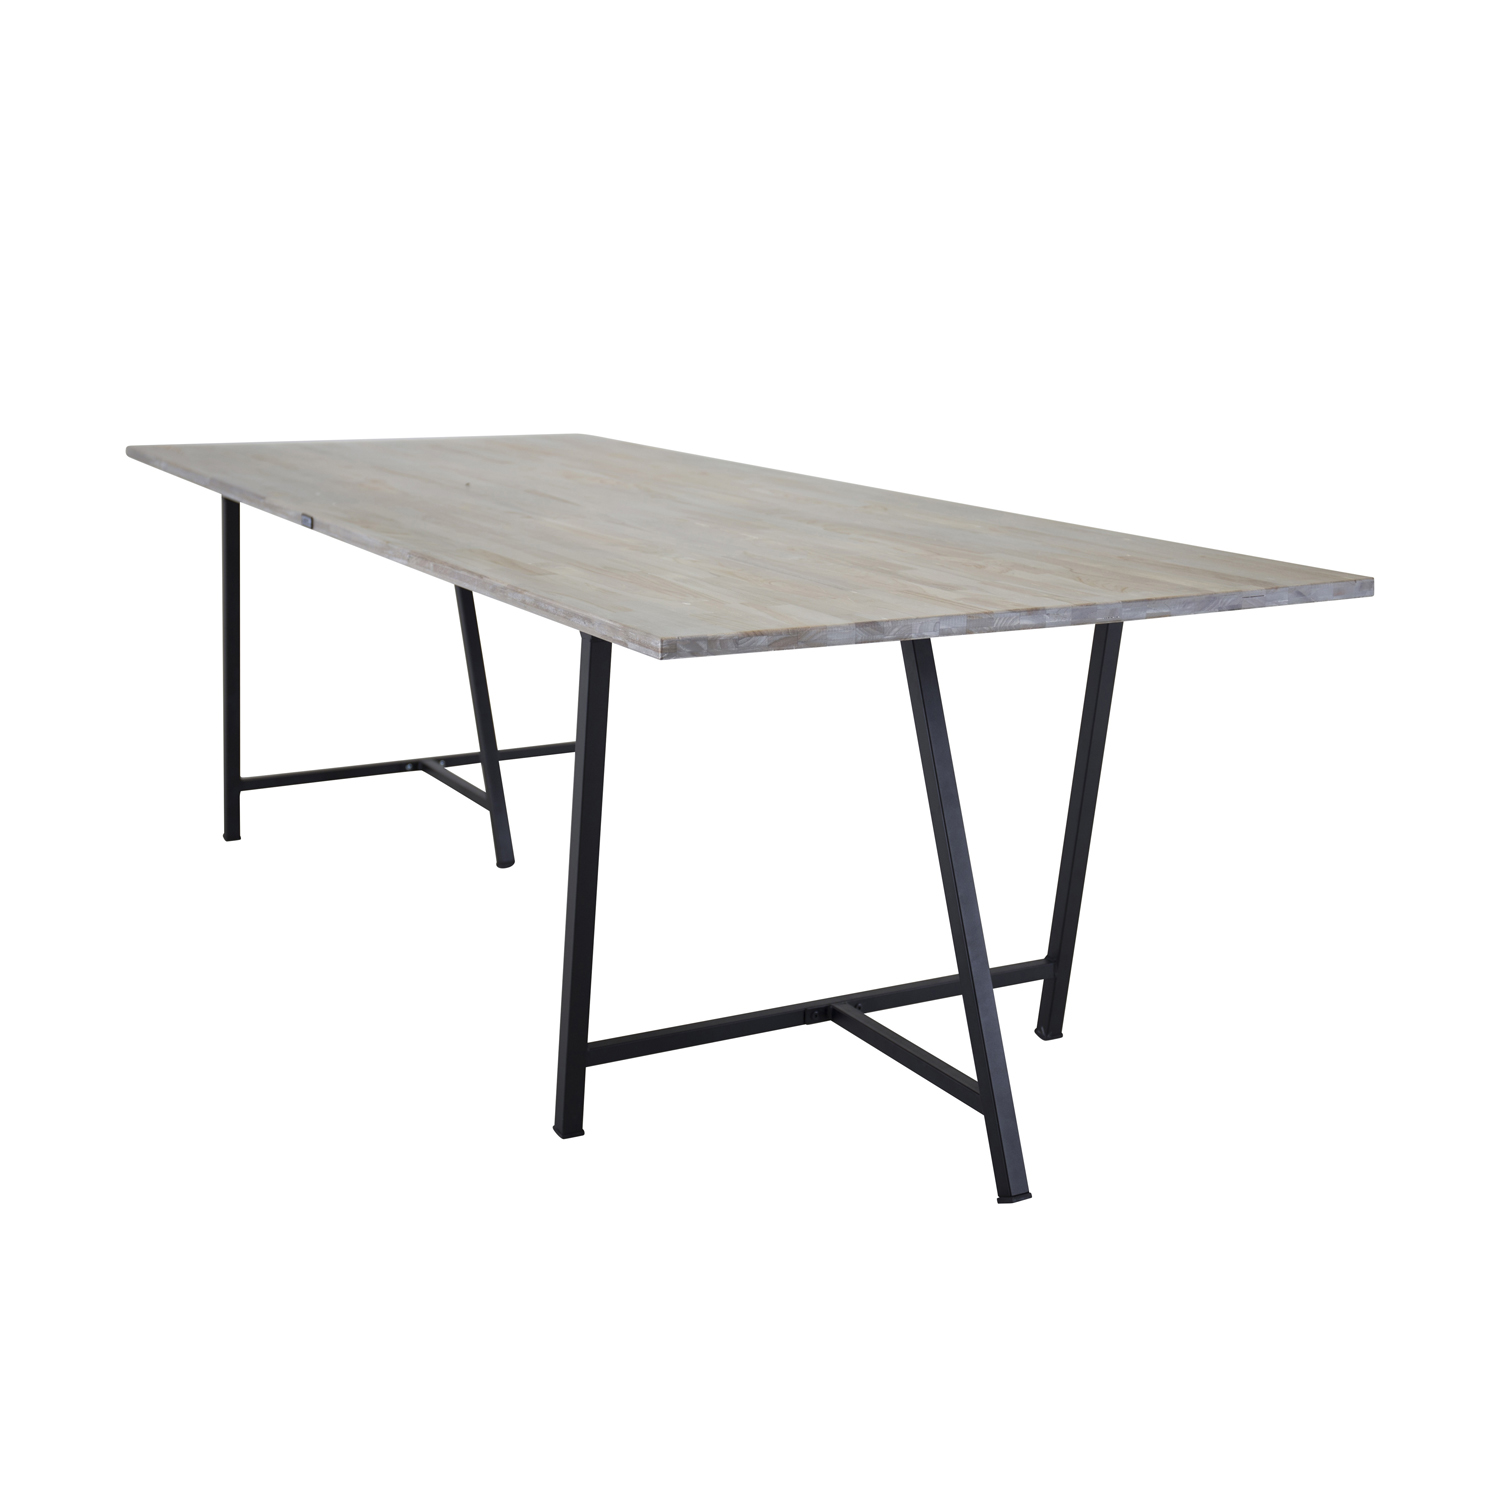 Venture Design Jepara Spisebord - Grå Træ Og Metal (250X100) Spisestue